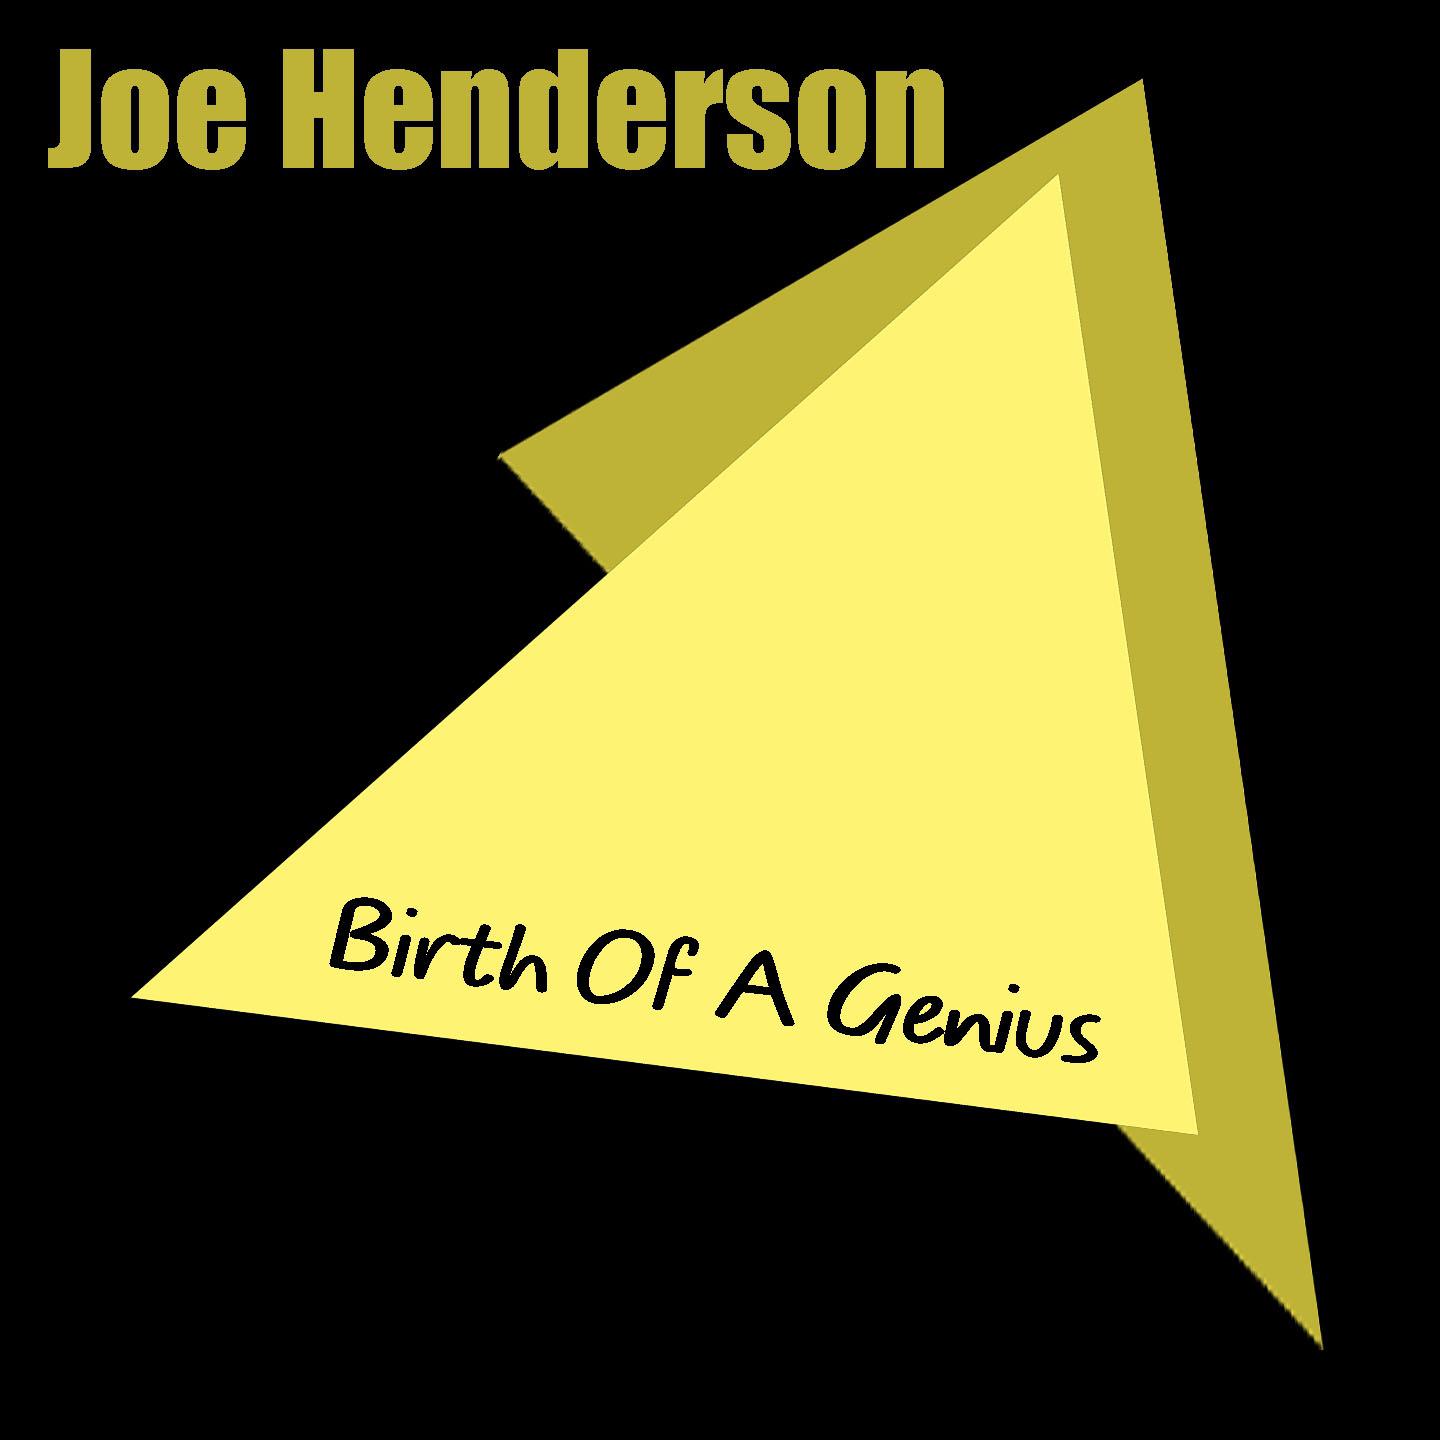 Joe Henderson: Birth Of A Genius